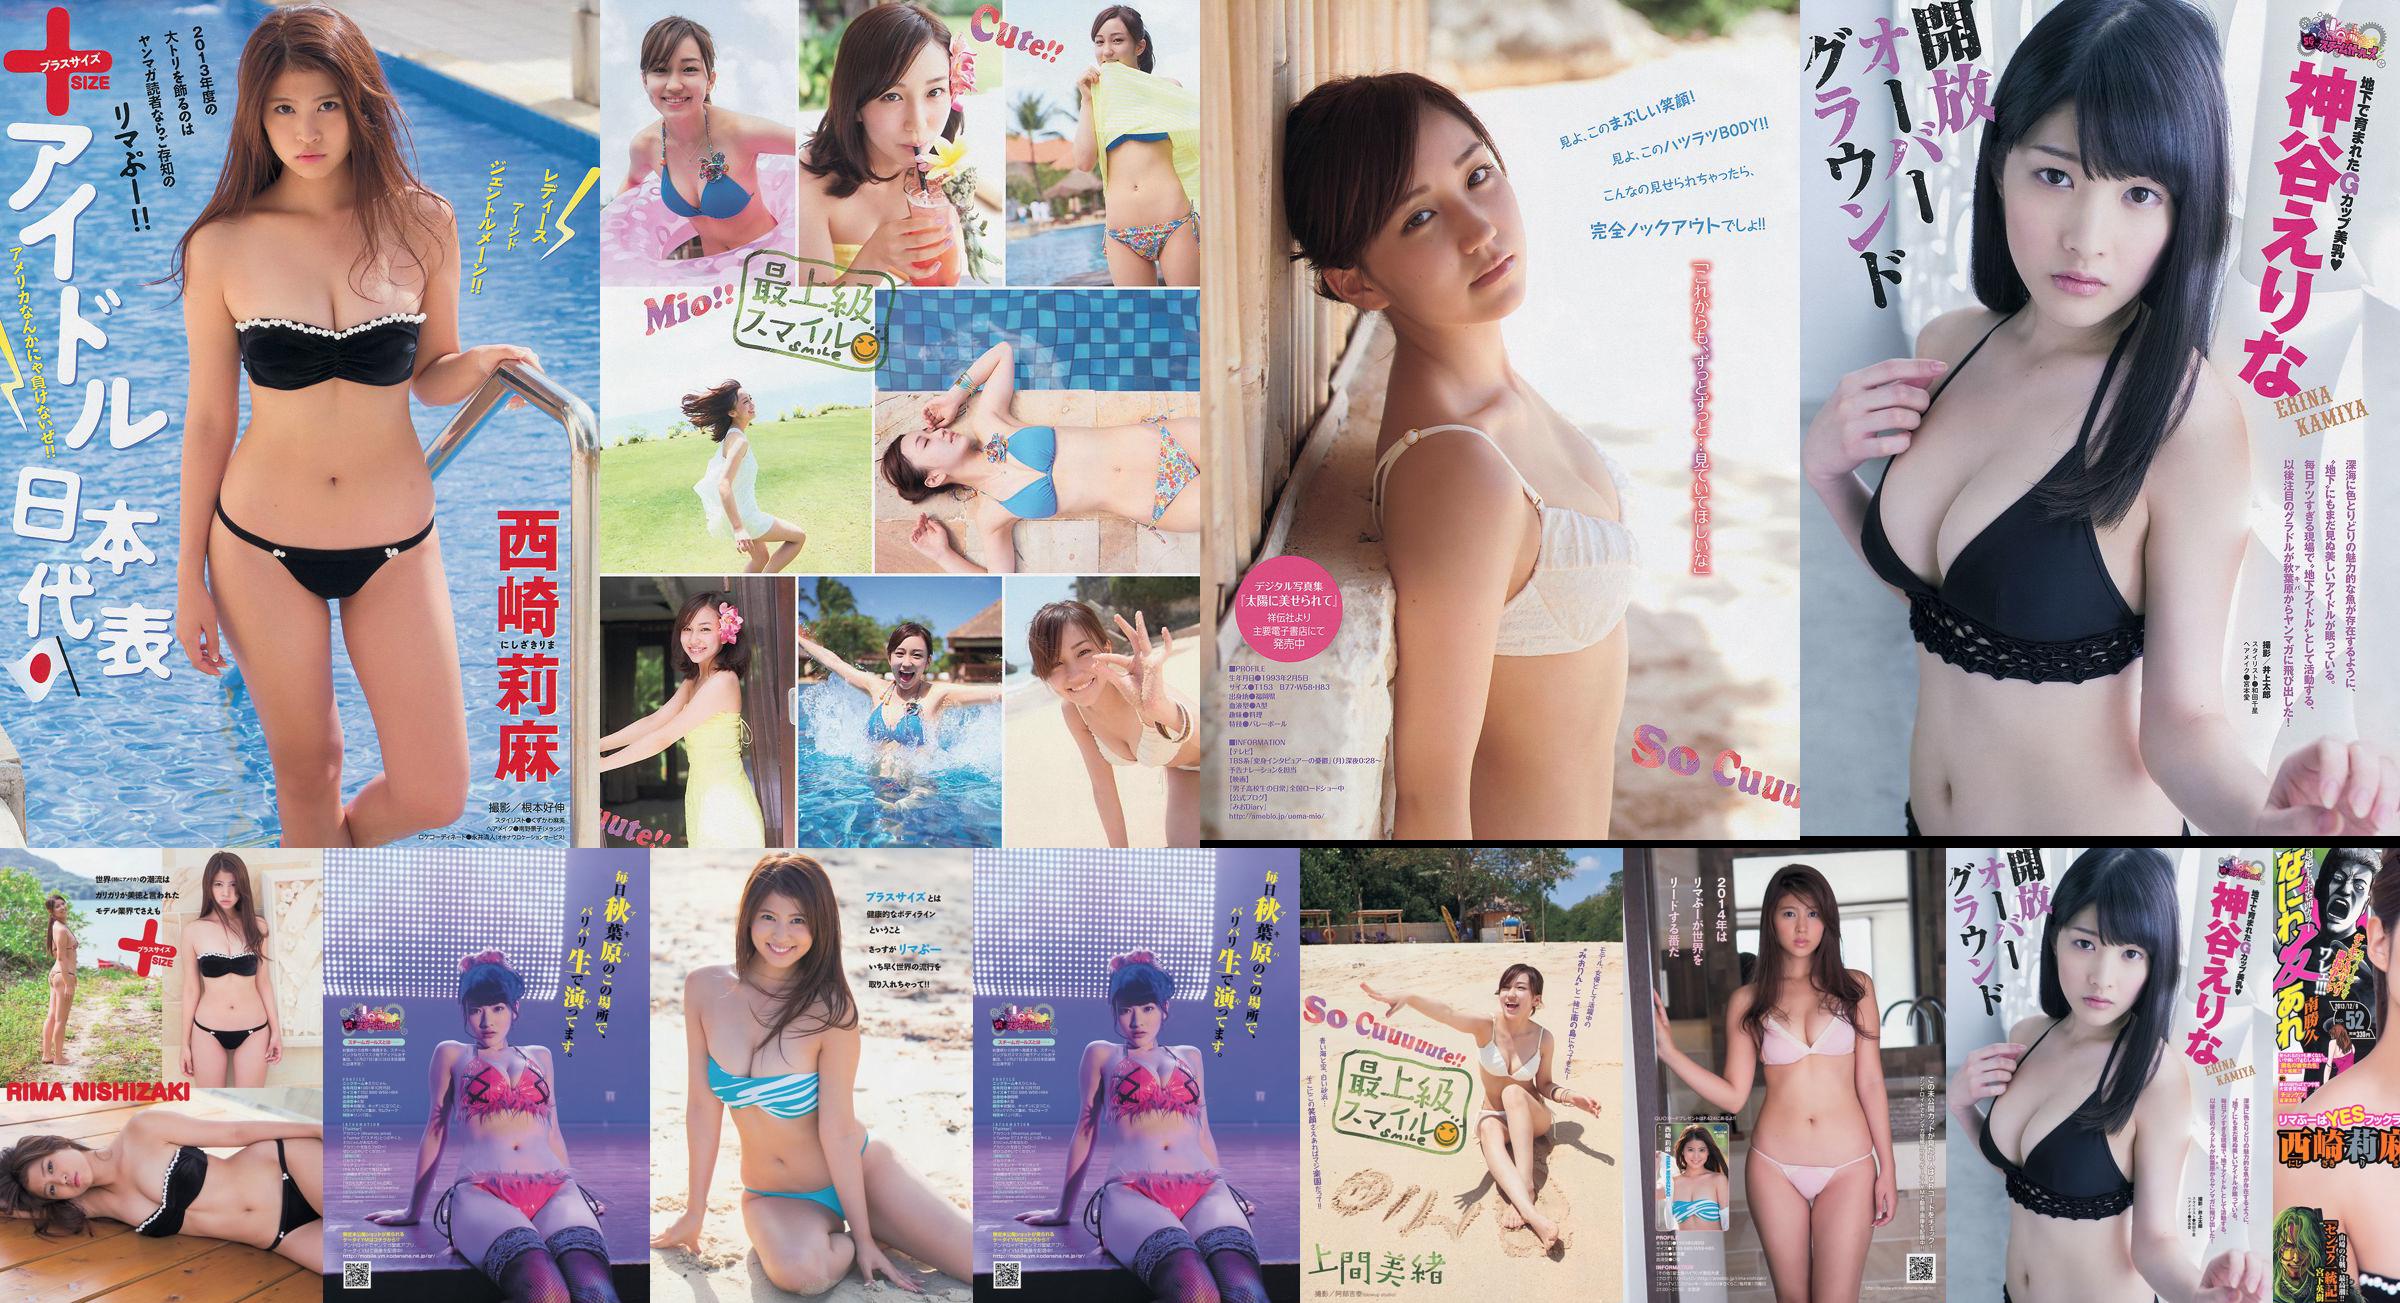 [Young Magazine] Rima Nishizaki Mio Uema Erina Kamiya 2013 No.52 Photo Moshi No.0d722e Pagina 1